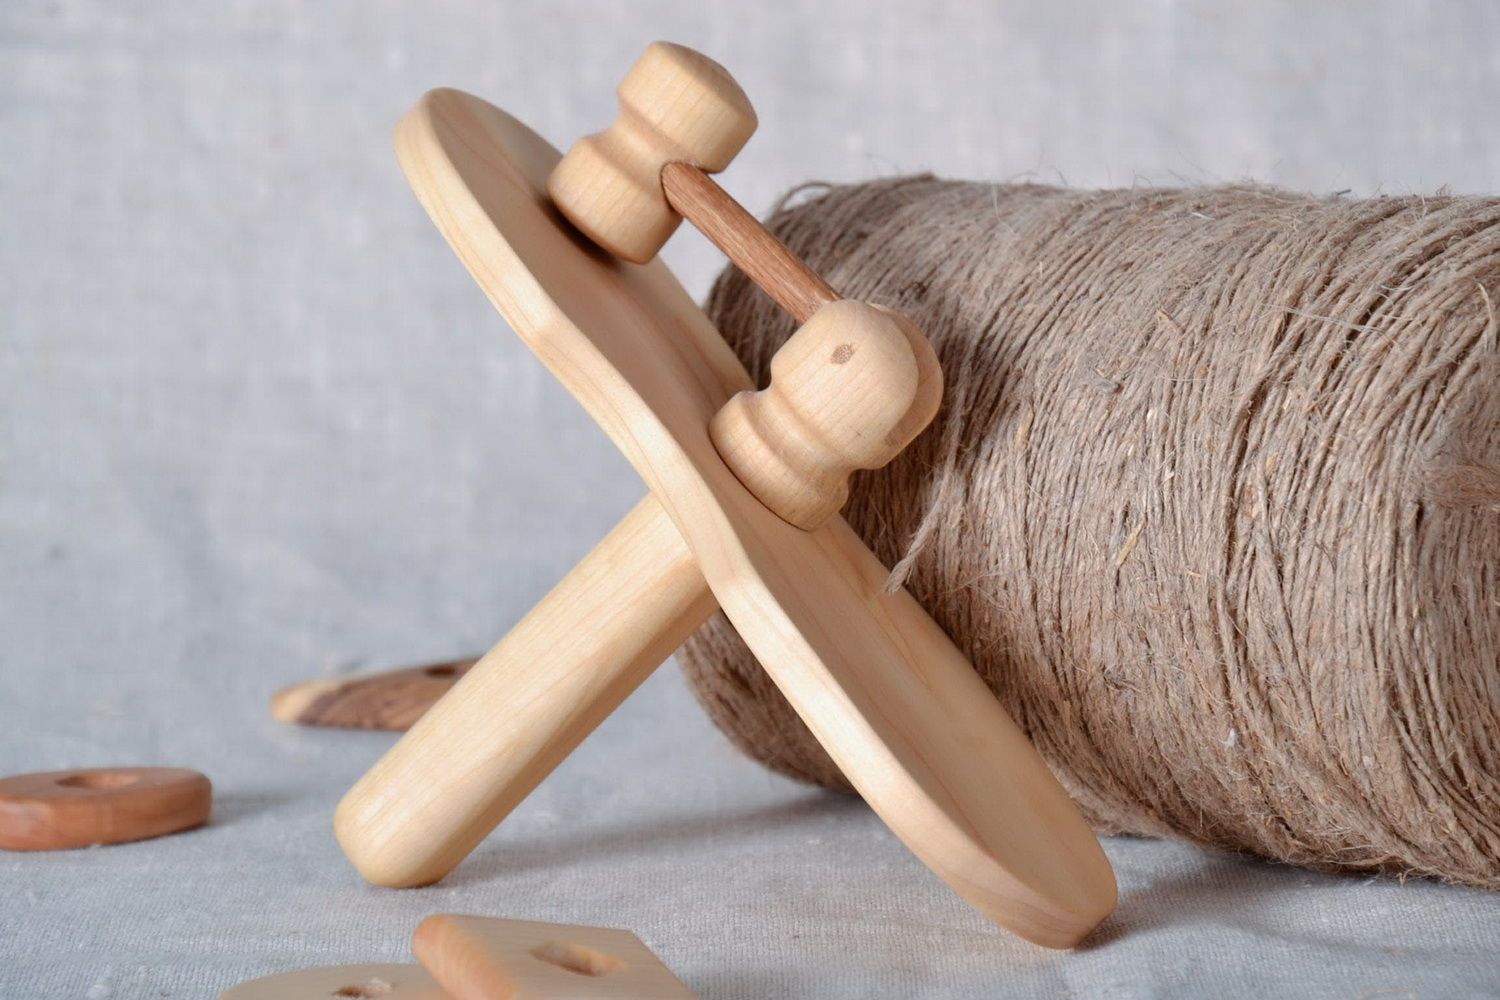 Brinquedo de madeira codornizão foto 1